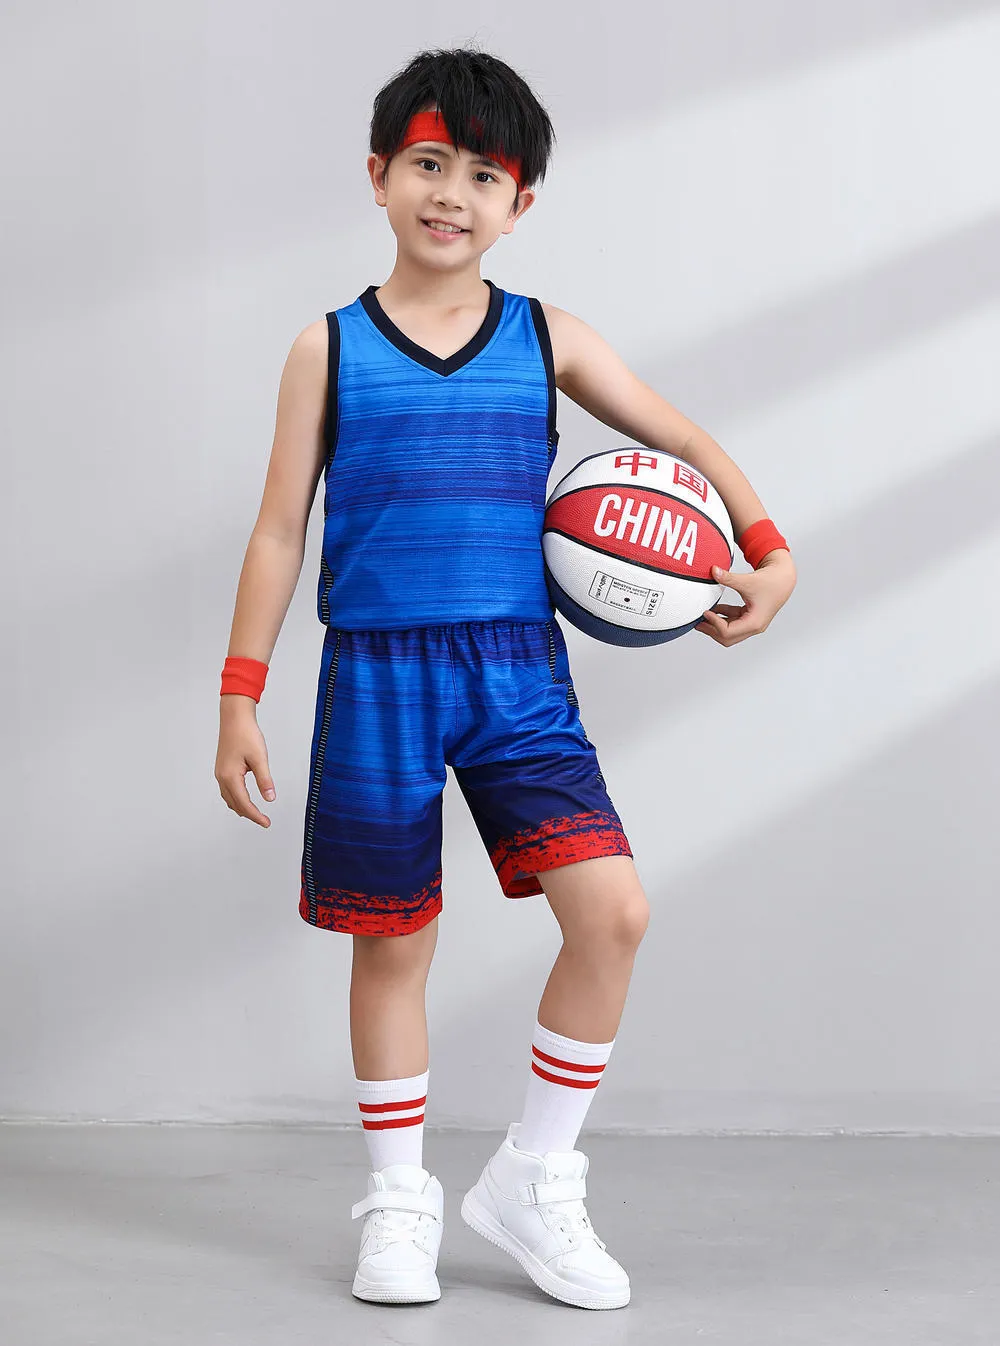 Sublimation mesh Basketball Jersey Custom pour Homme ensemble uniforme de  basket-ball Usure - Chine Maillot de basket-ball et vêtements de sport prix